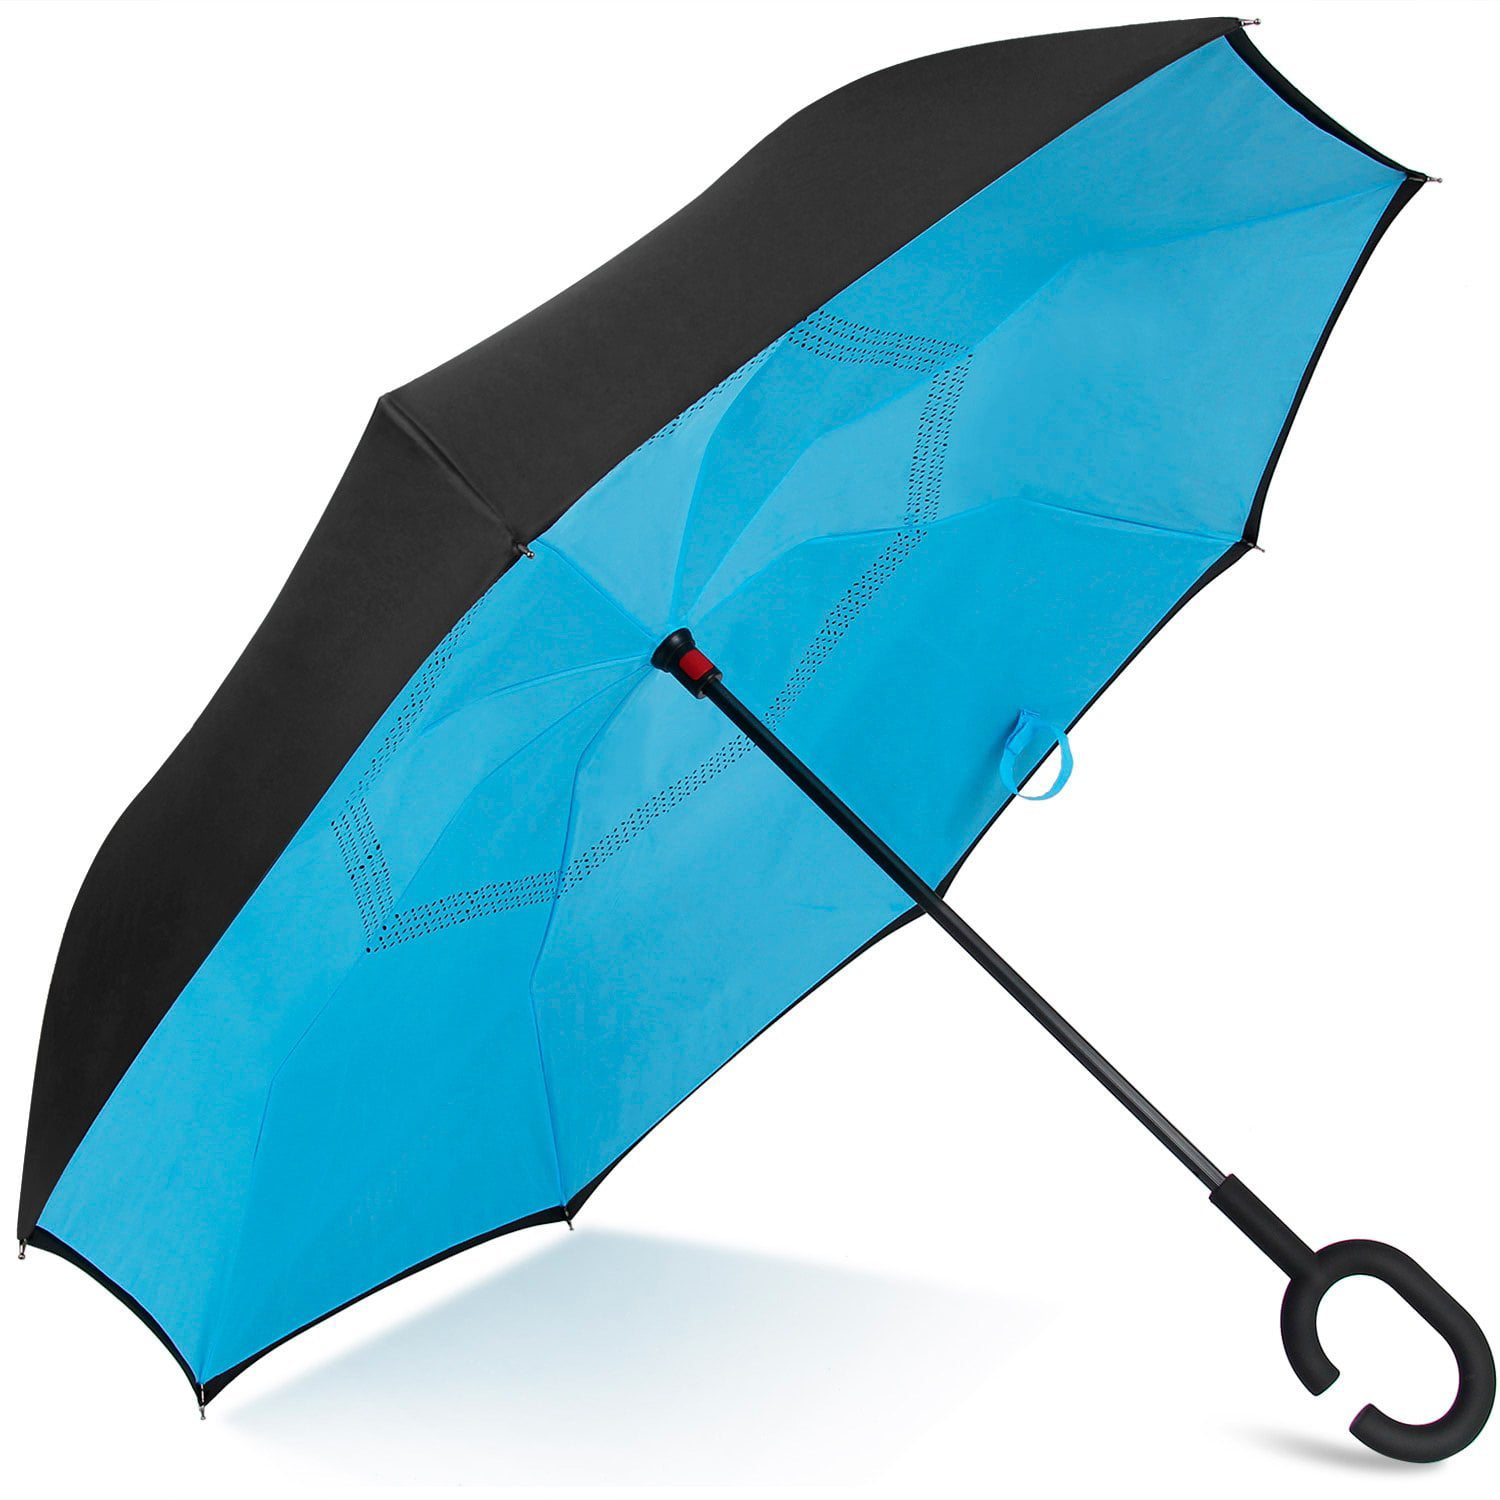 best inverted umbrella 2018